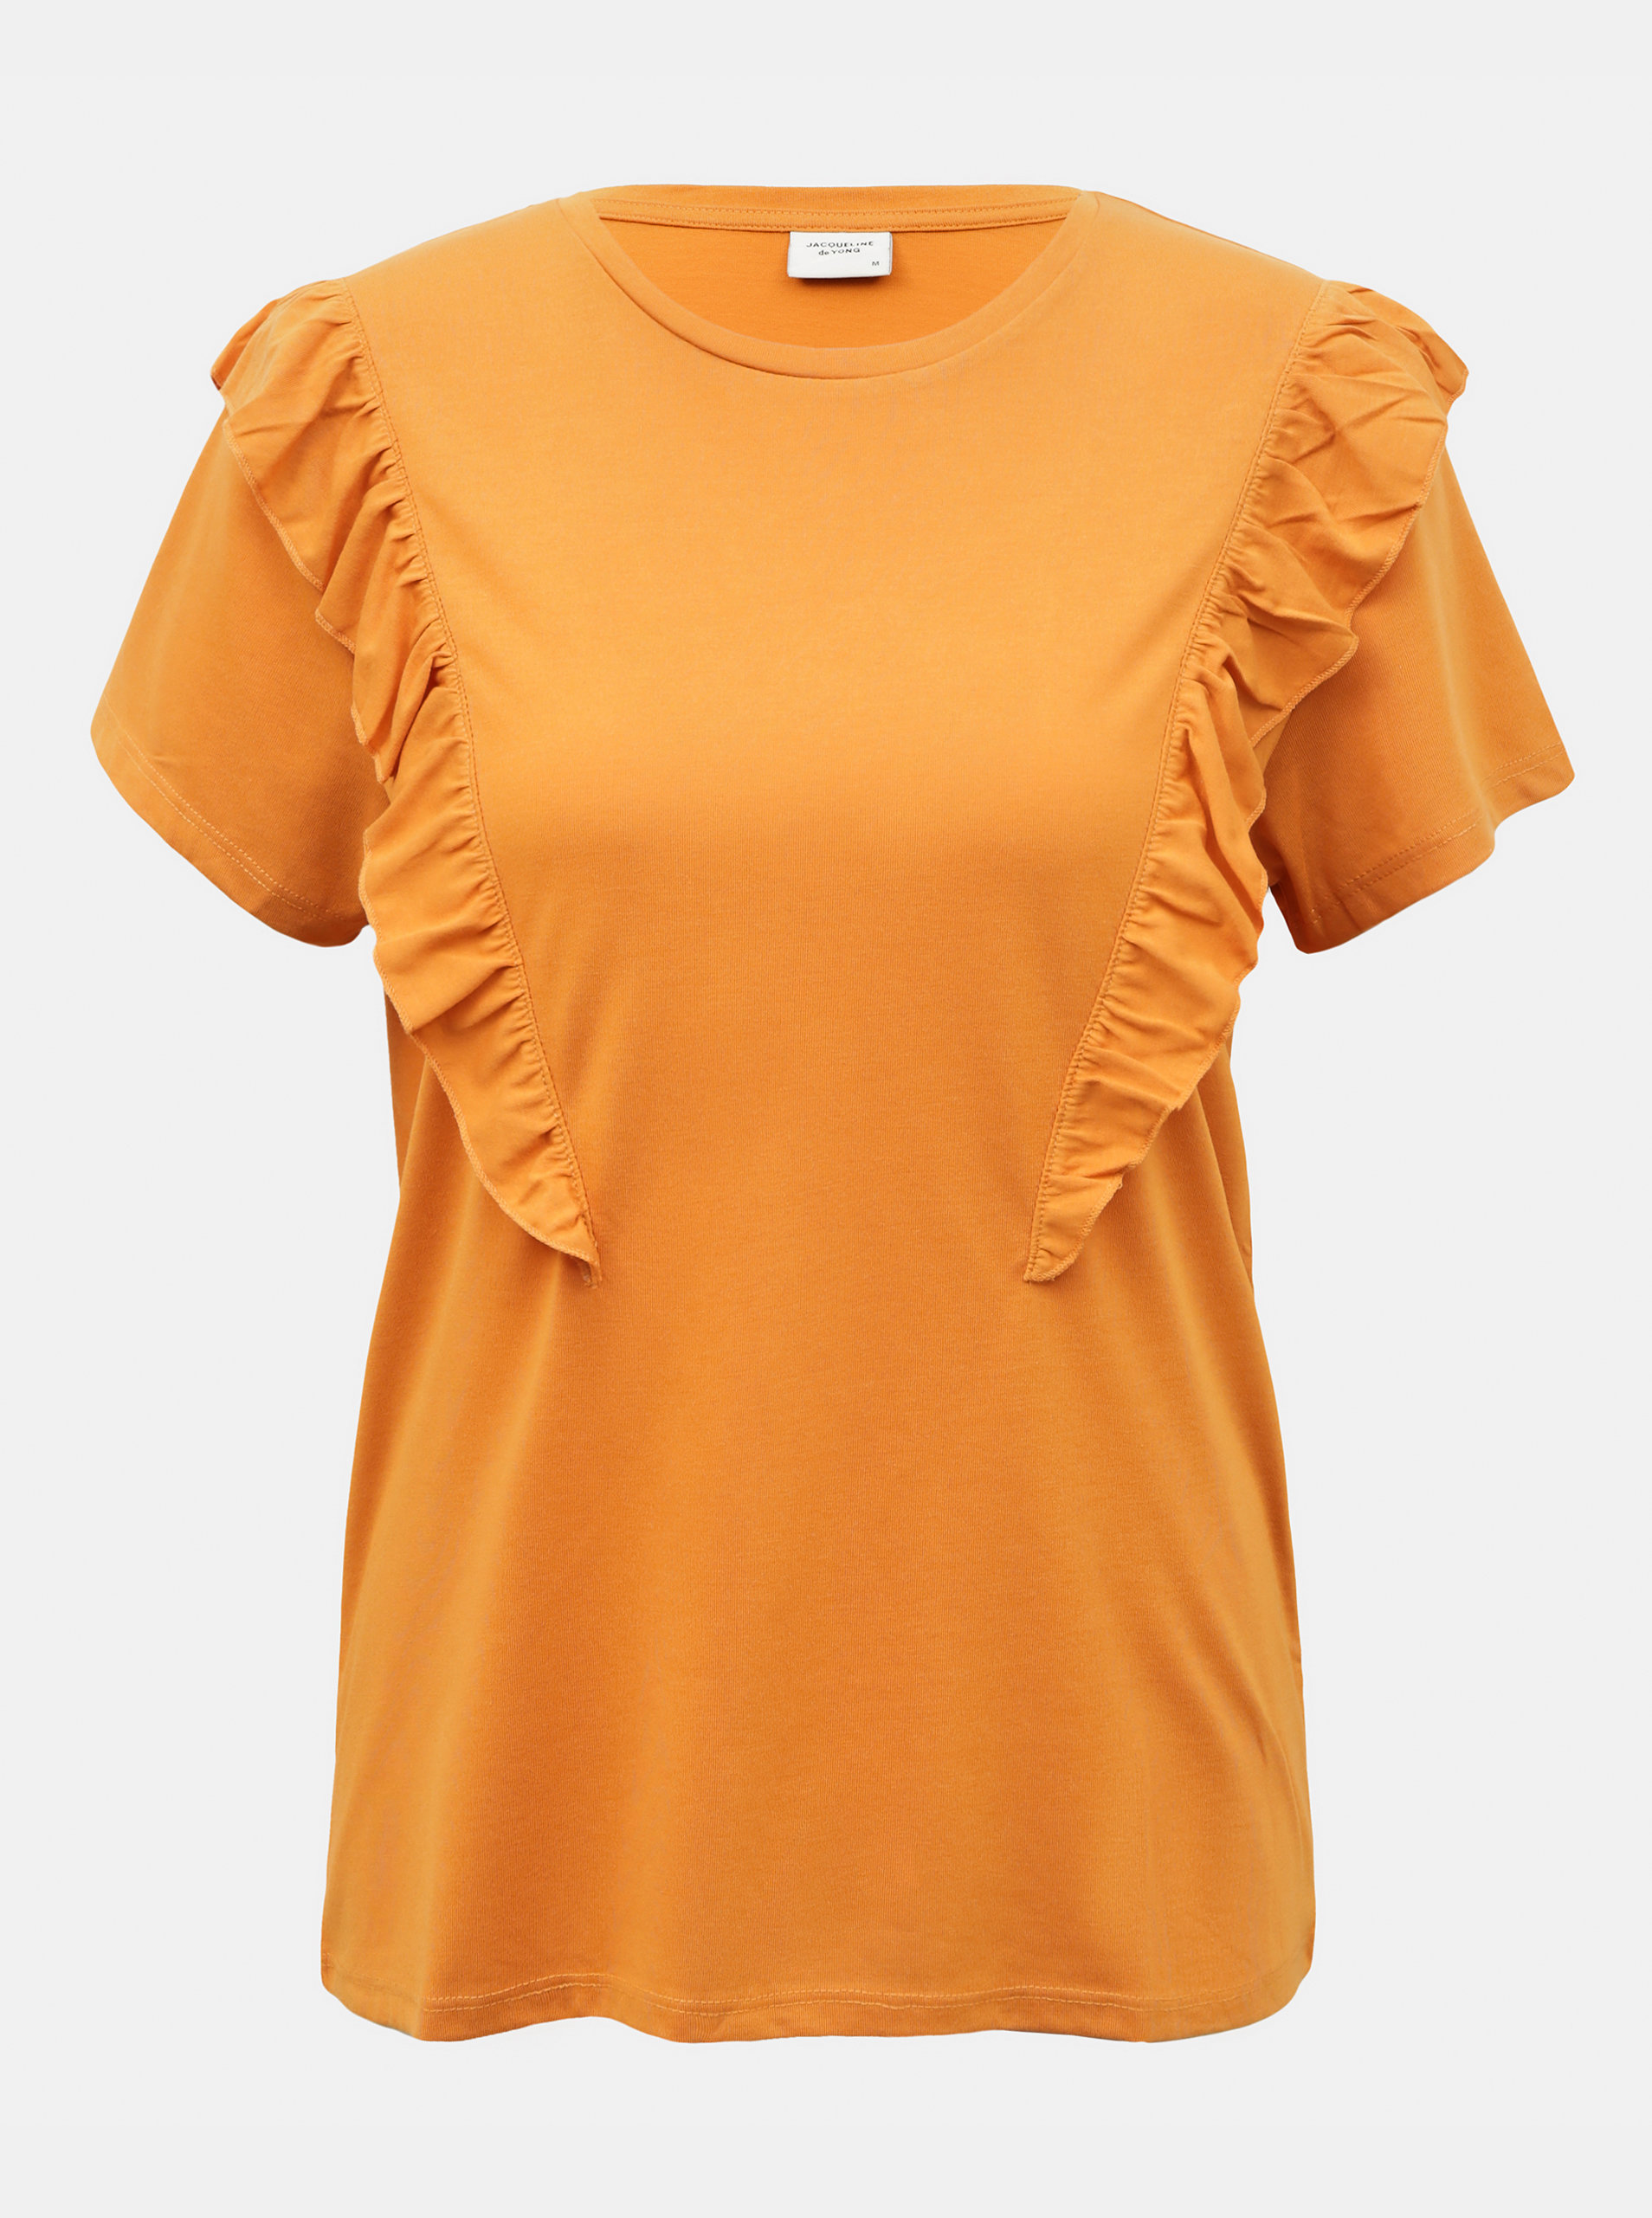 Fotografie Oranžové tričko s volánem Jacqueline de Yong Karen